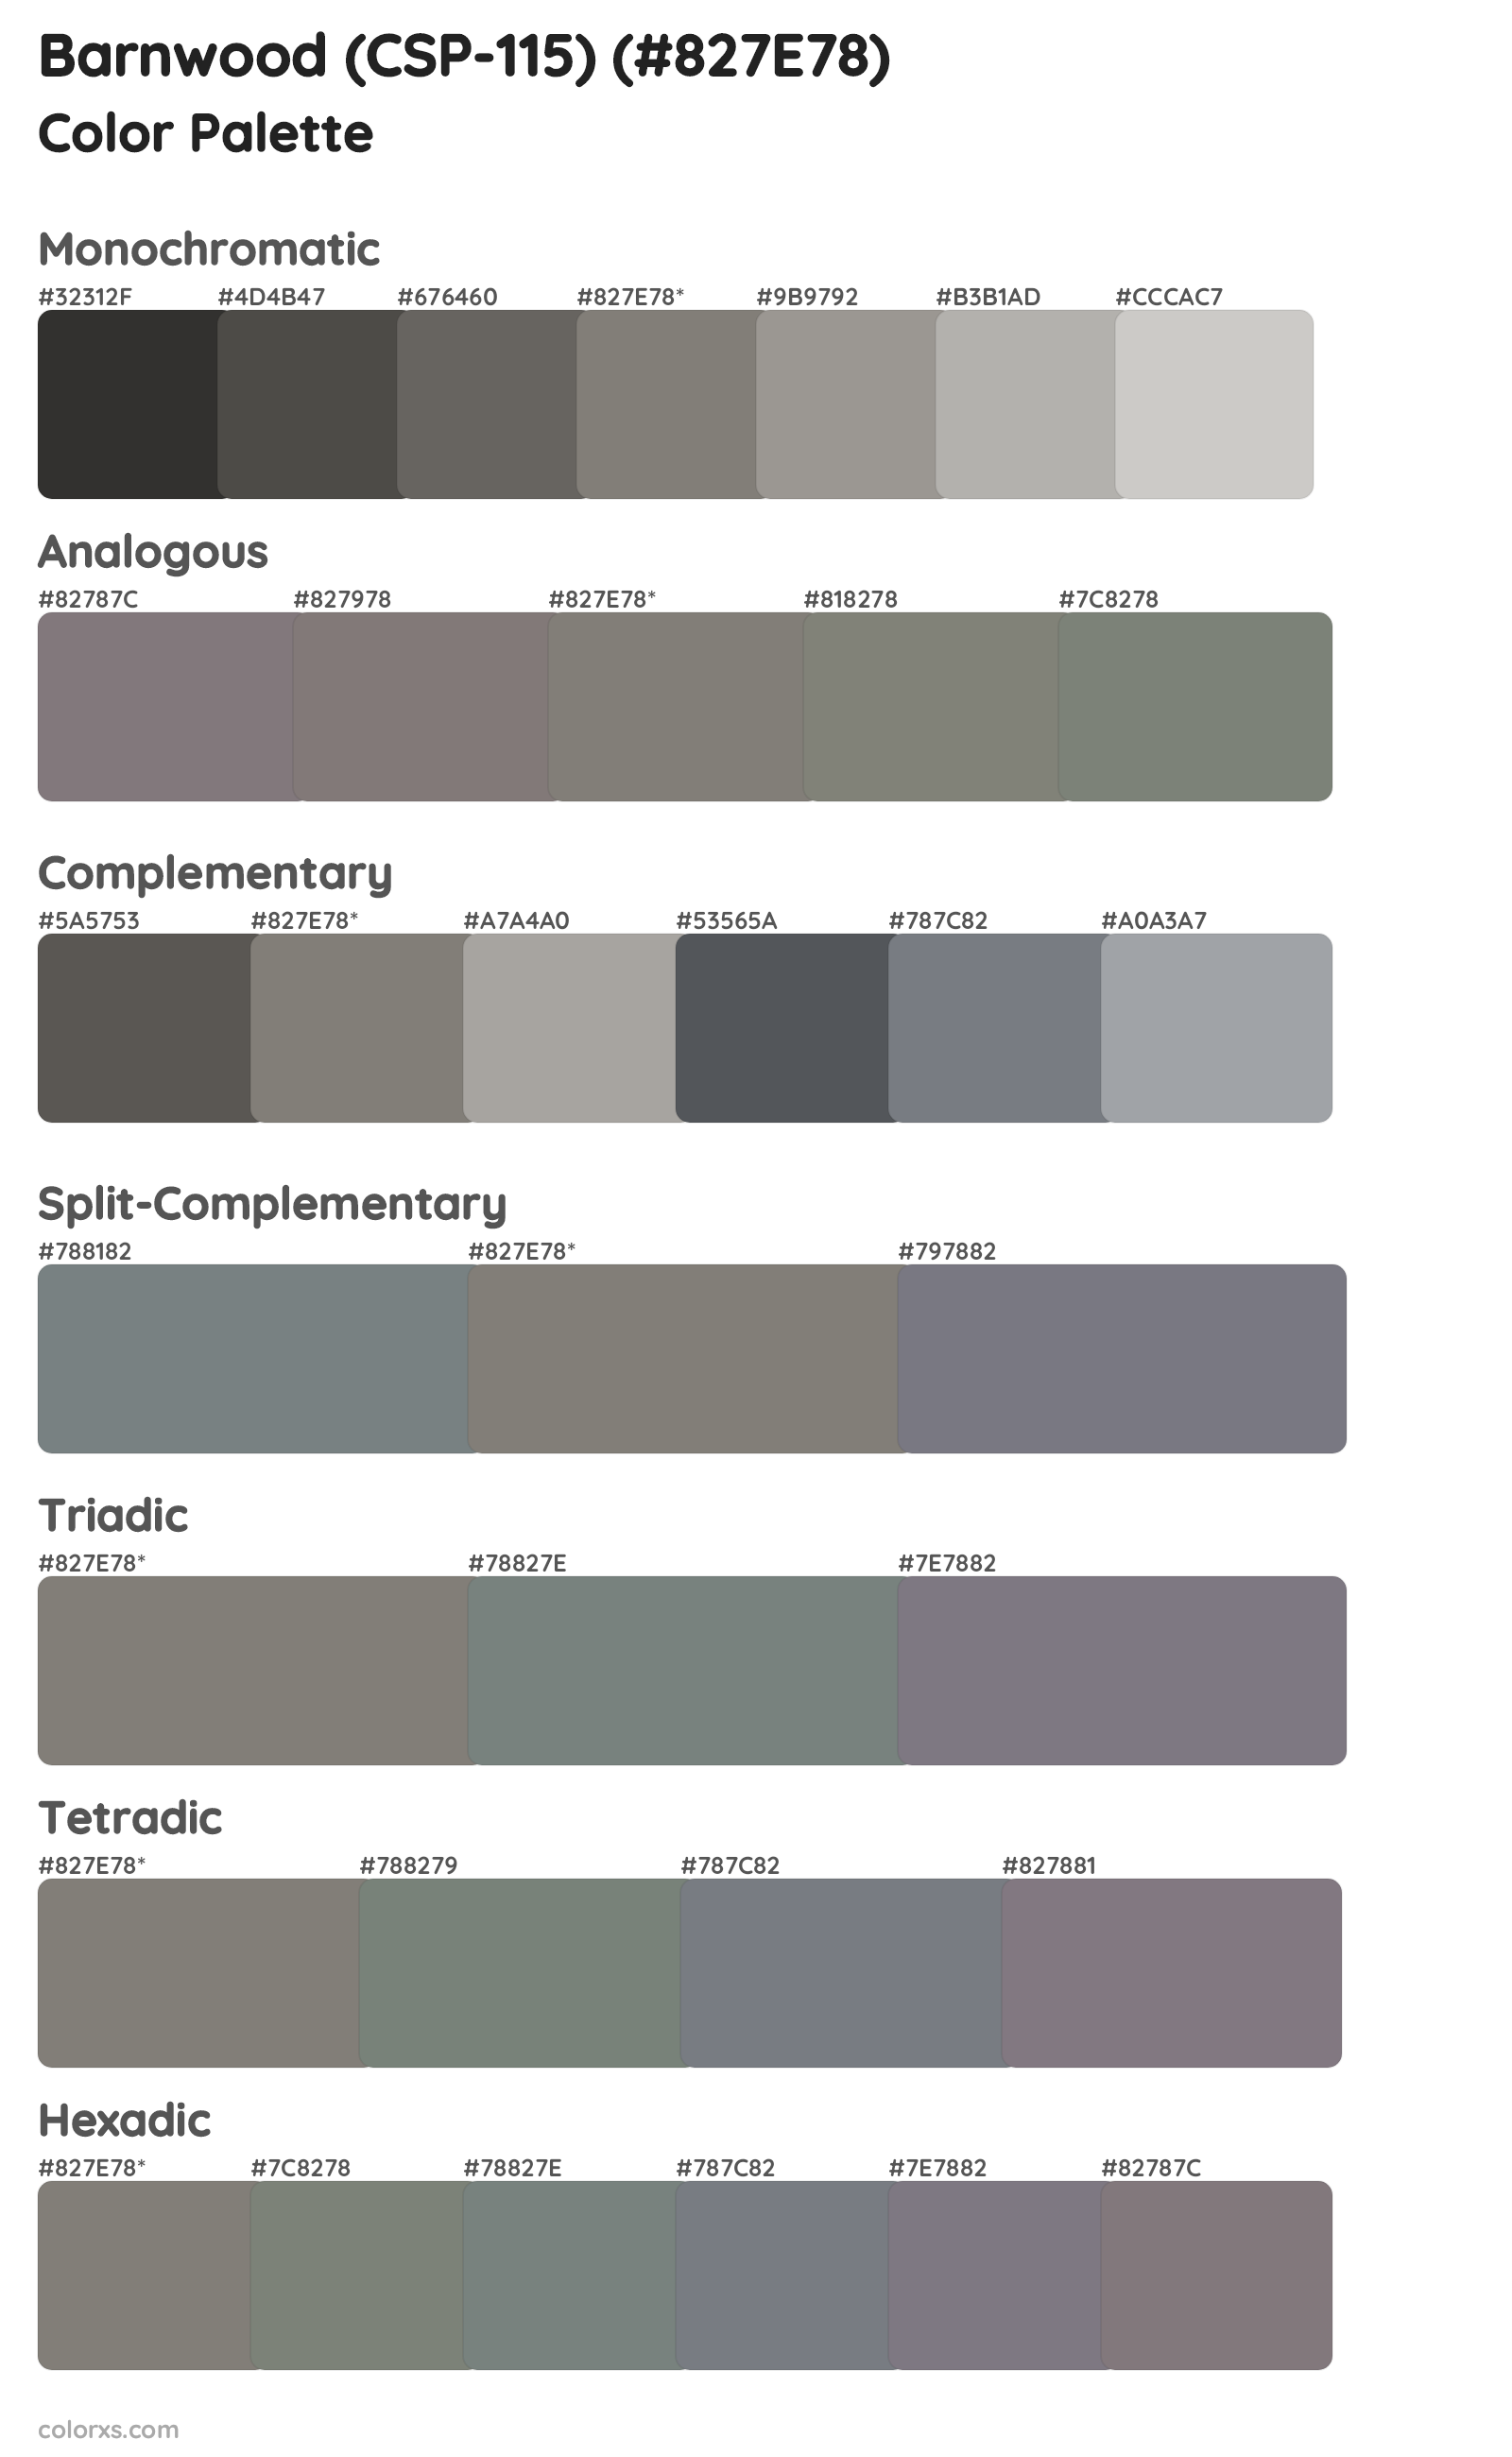 Barnwood (CSP-115) Color Scheme Palettes